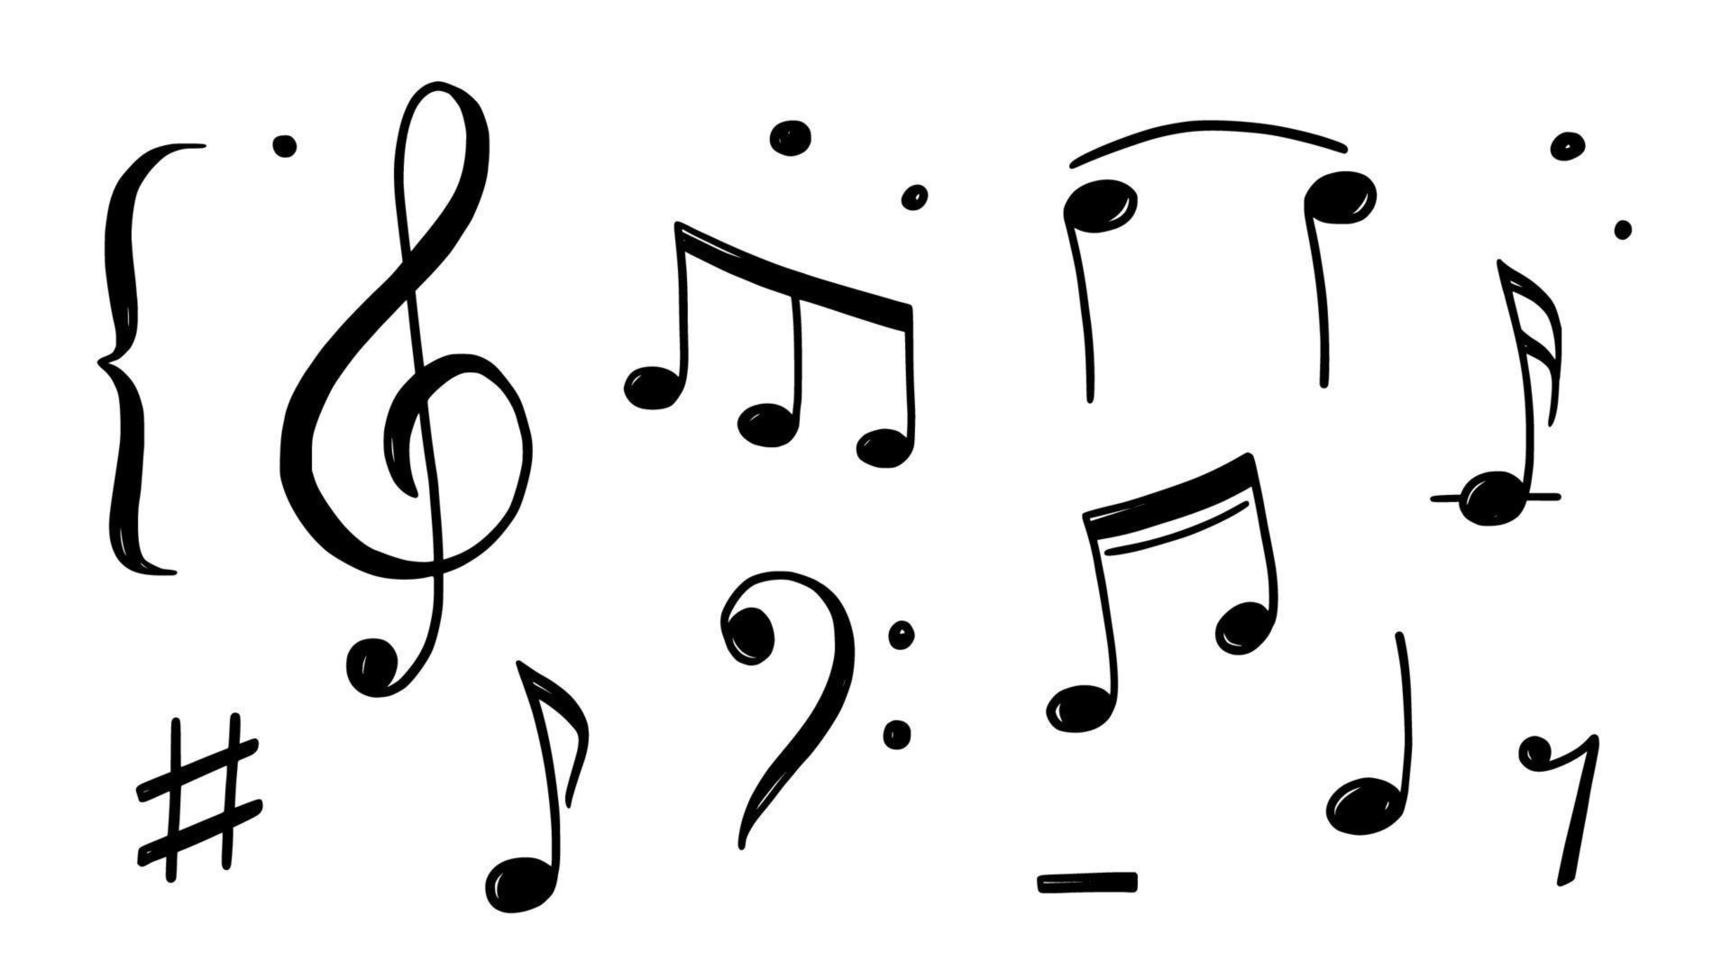 stile disegnato doodle di nota musicale vettore